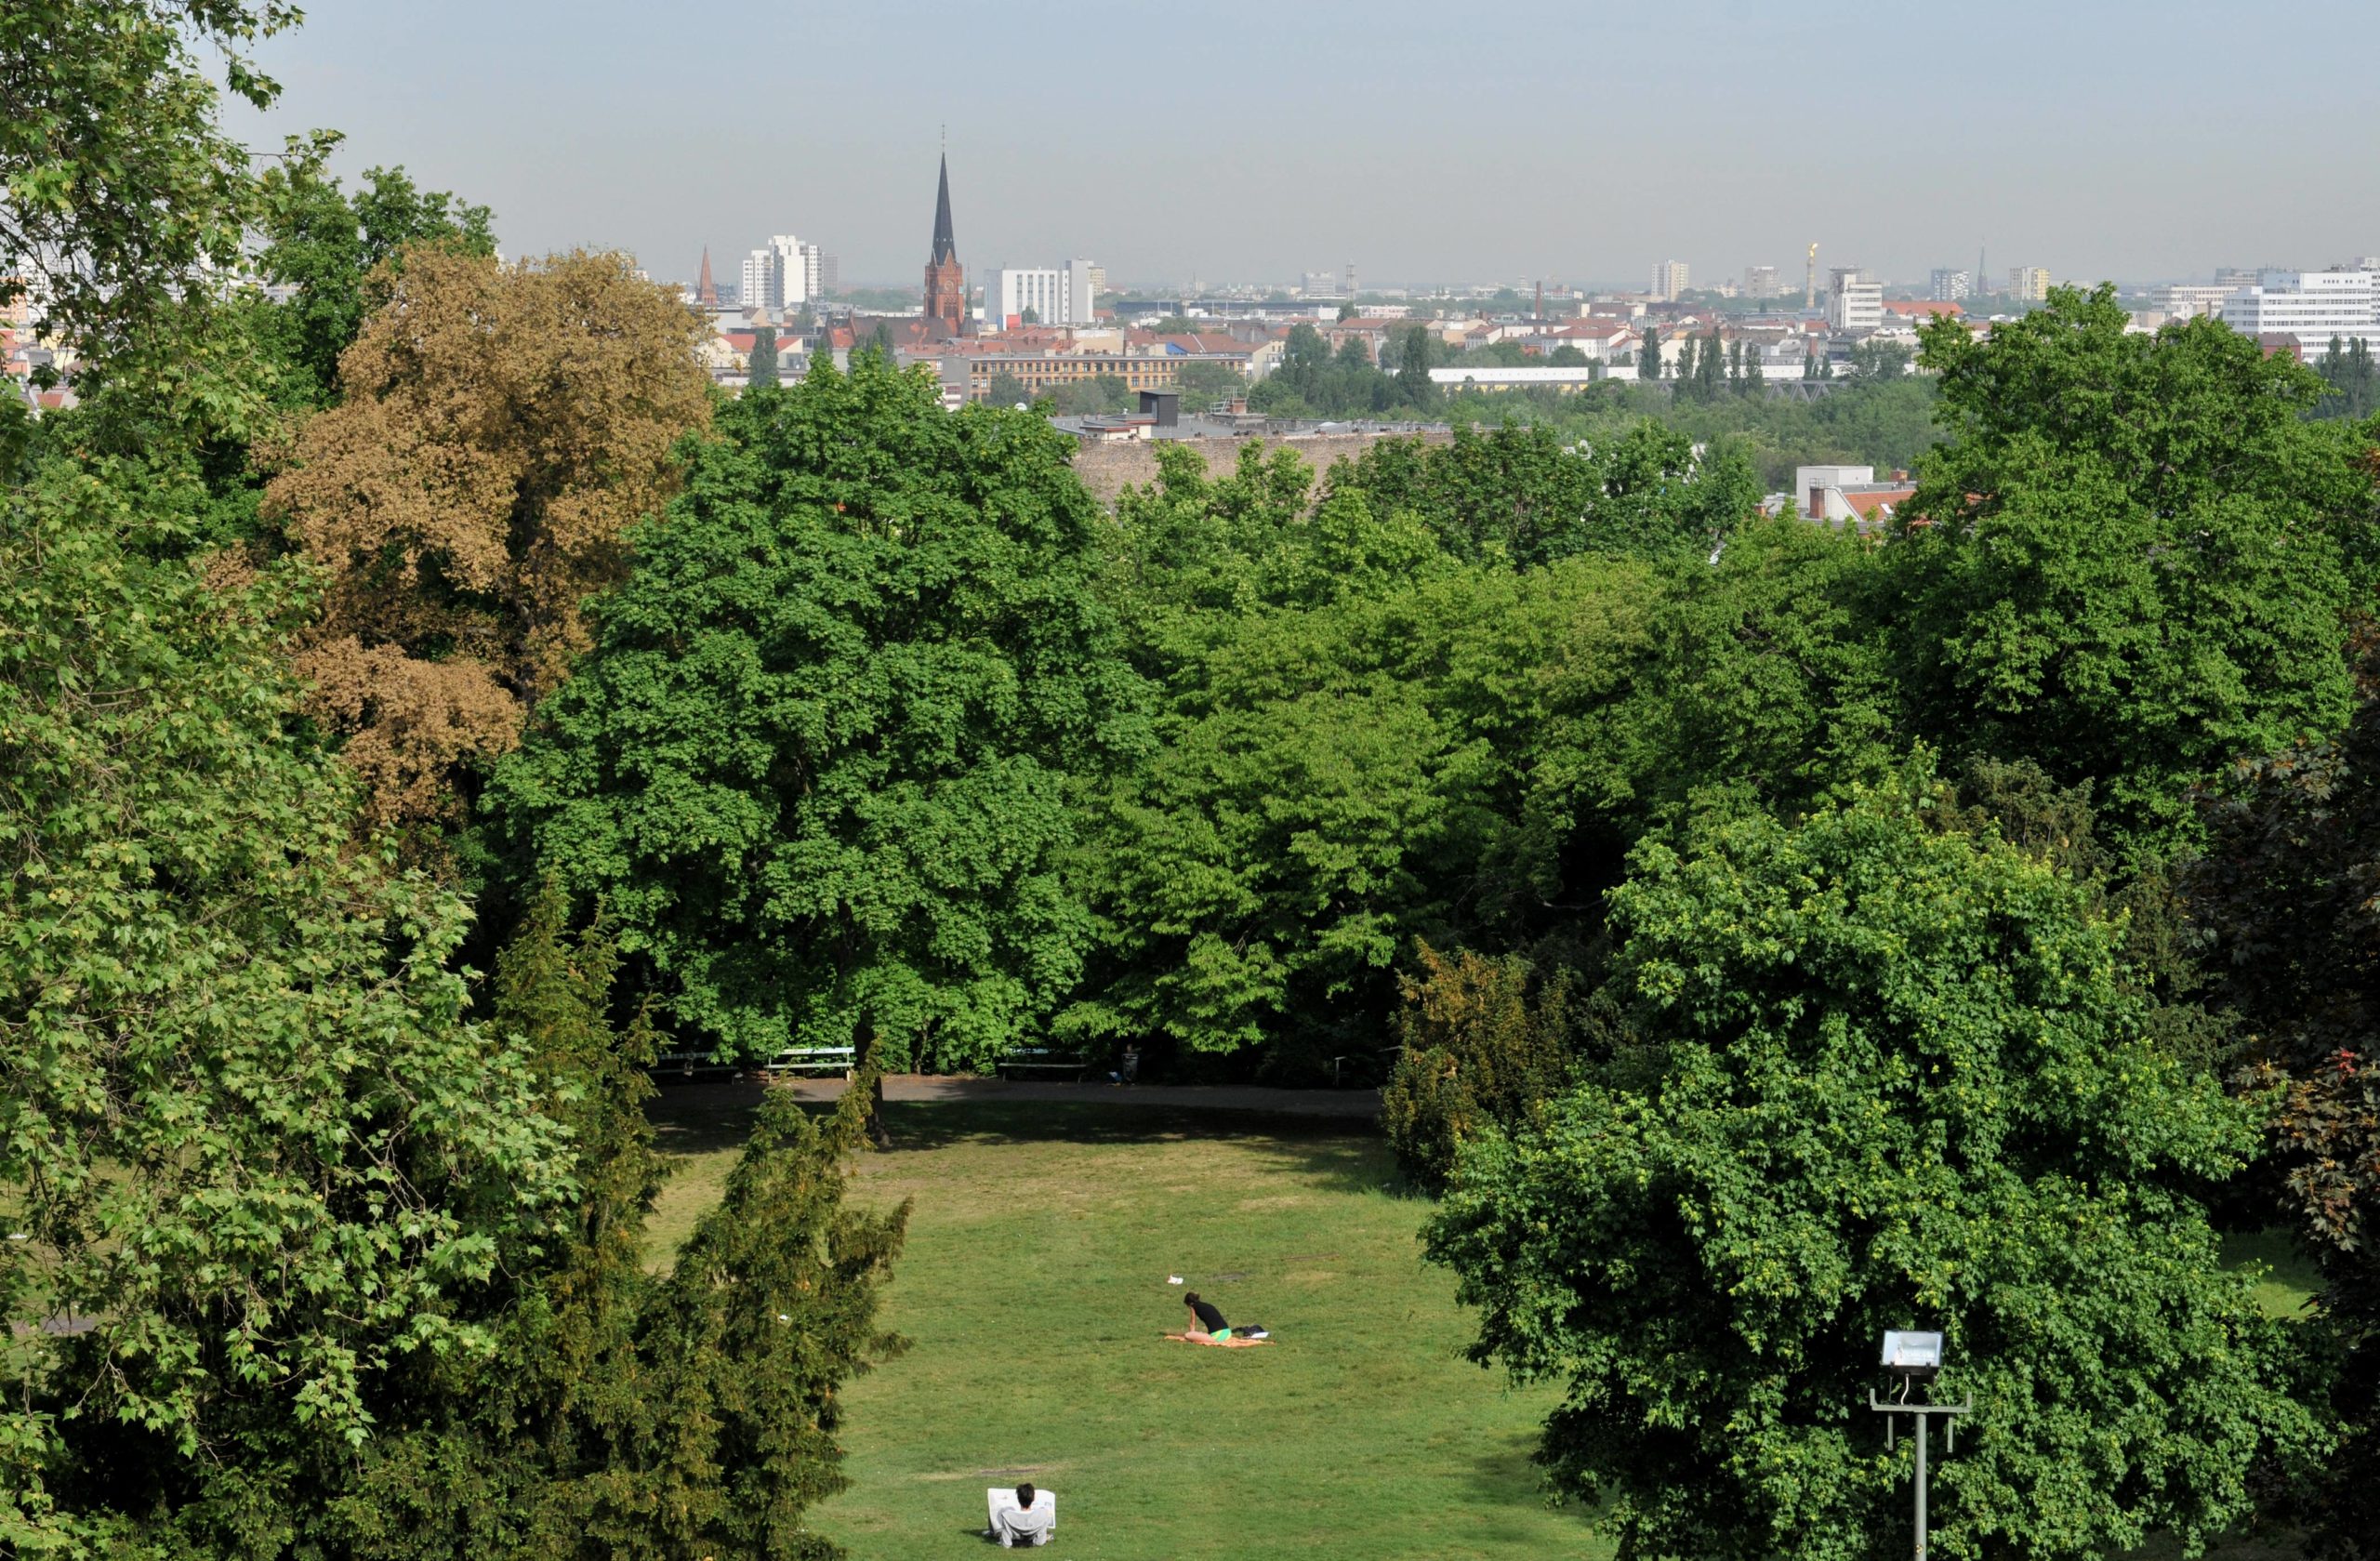 Liegewiesen in Berlin Sonnen und entspannen auf dem Kreuzberg: Der Viktoriapark lädt bei schönem Wetter zum Entspannen ein.